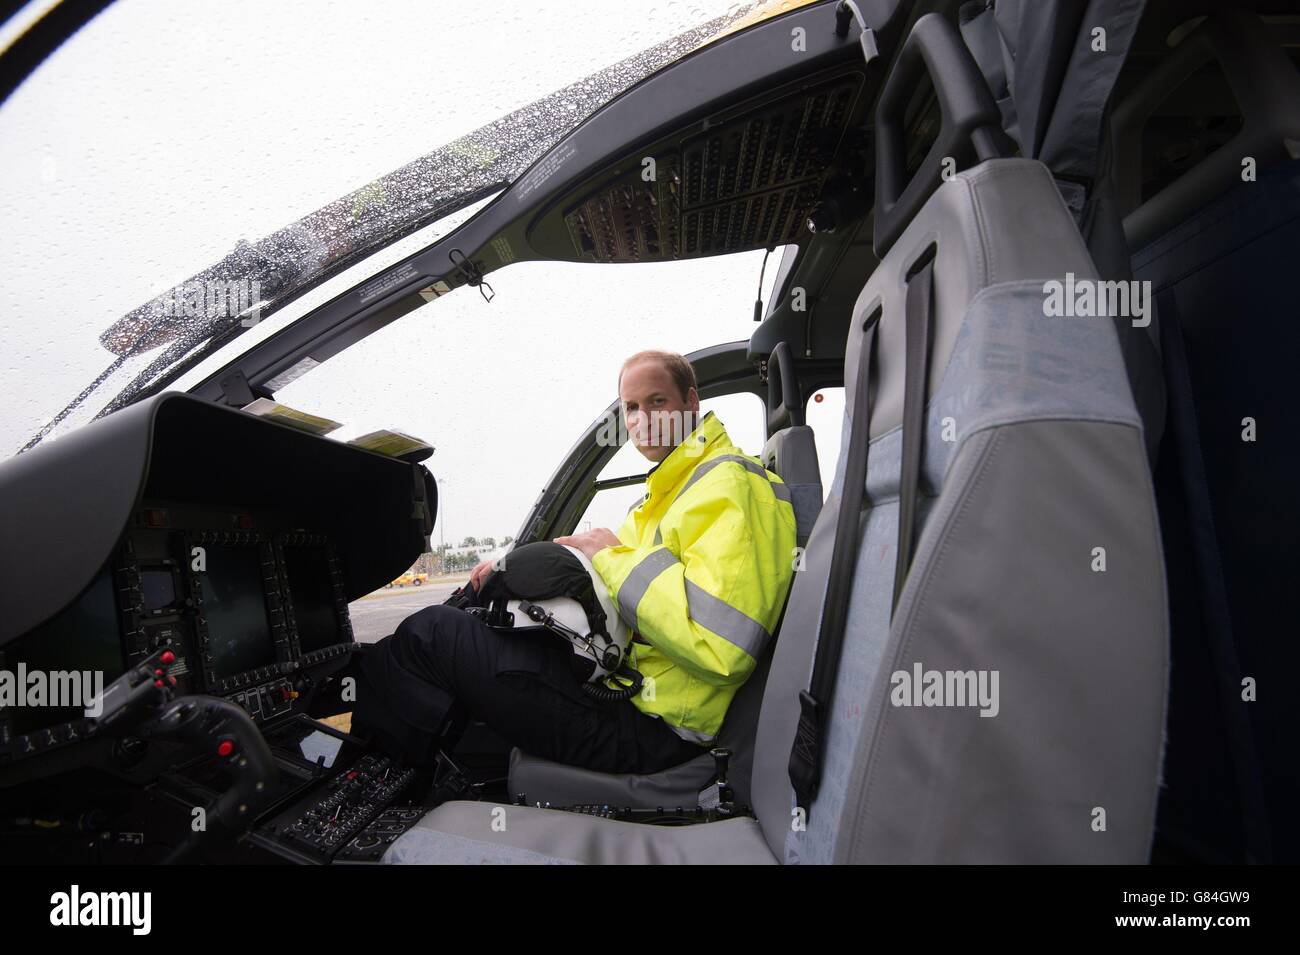 Le duc de Cambridge est assis dans le poste de pilotage de son hélicoptère alors qu'il commence son nouveau travail avec l'Ambulance aérienne d'East Anglian (EAAA) à l'aéroport de Cambridge. Banque D'Images